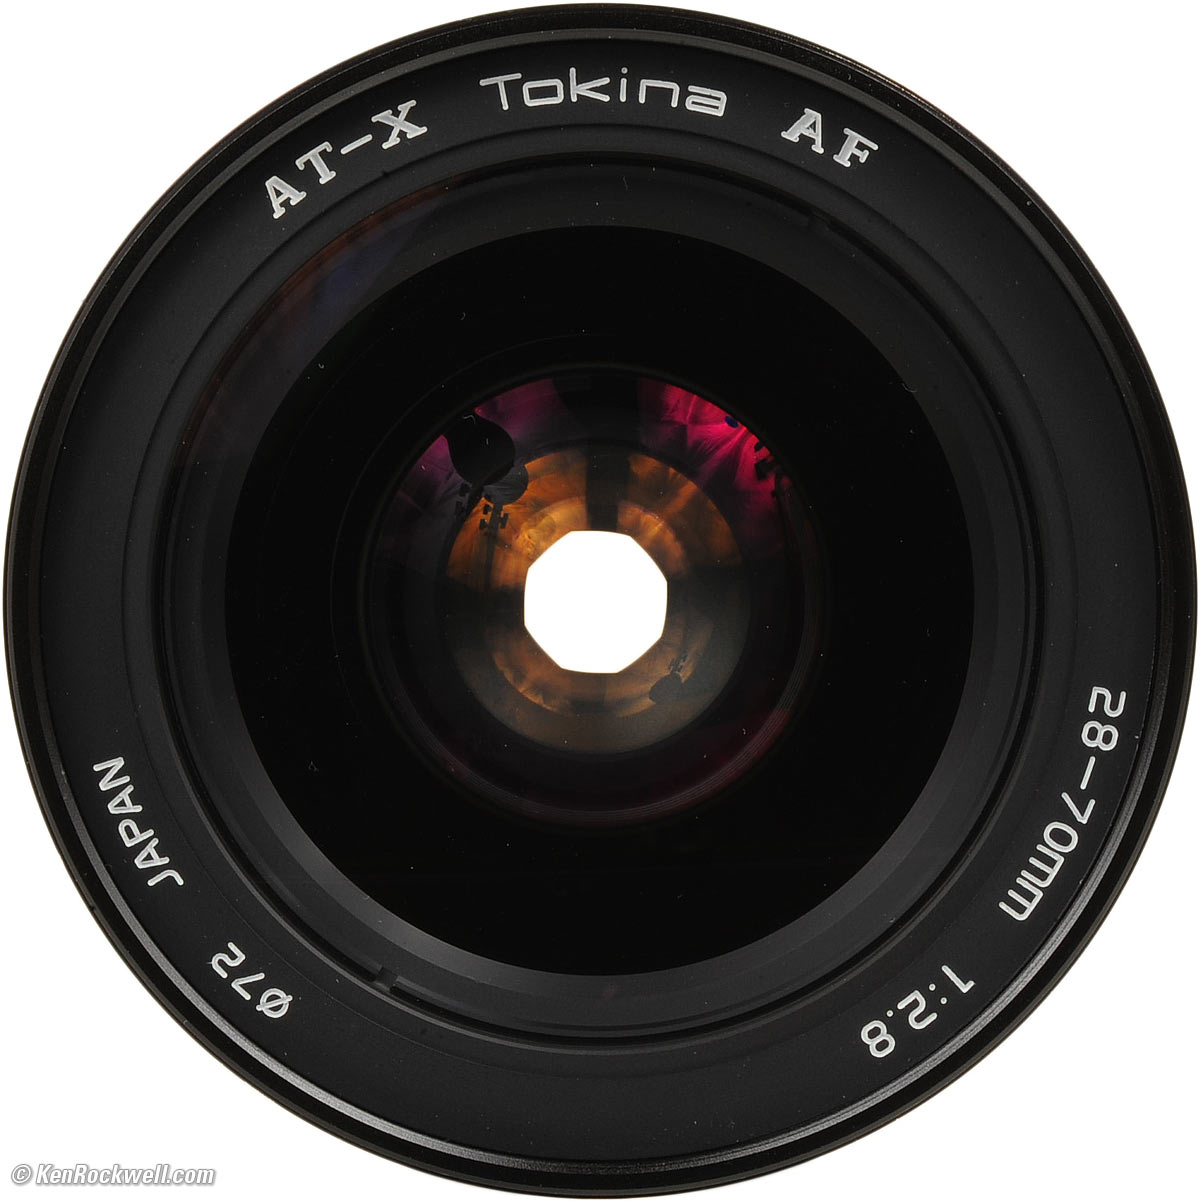 Tokina 28-70mm f/2.8 AT-X Review